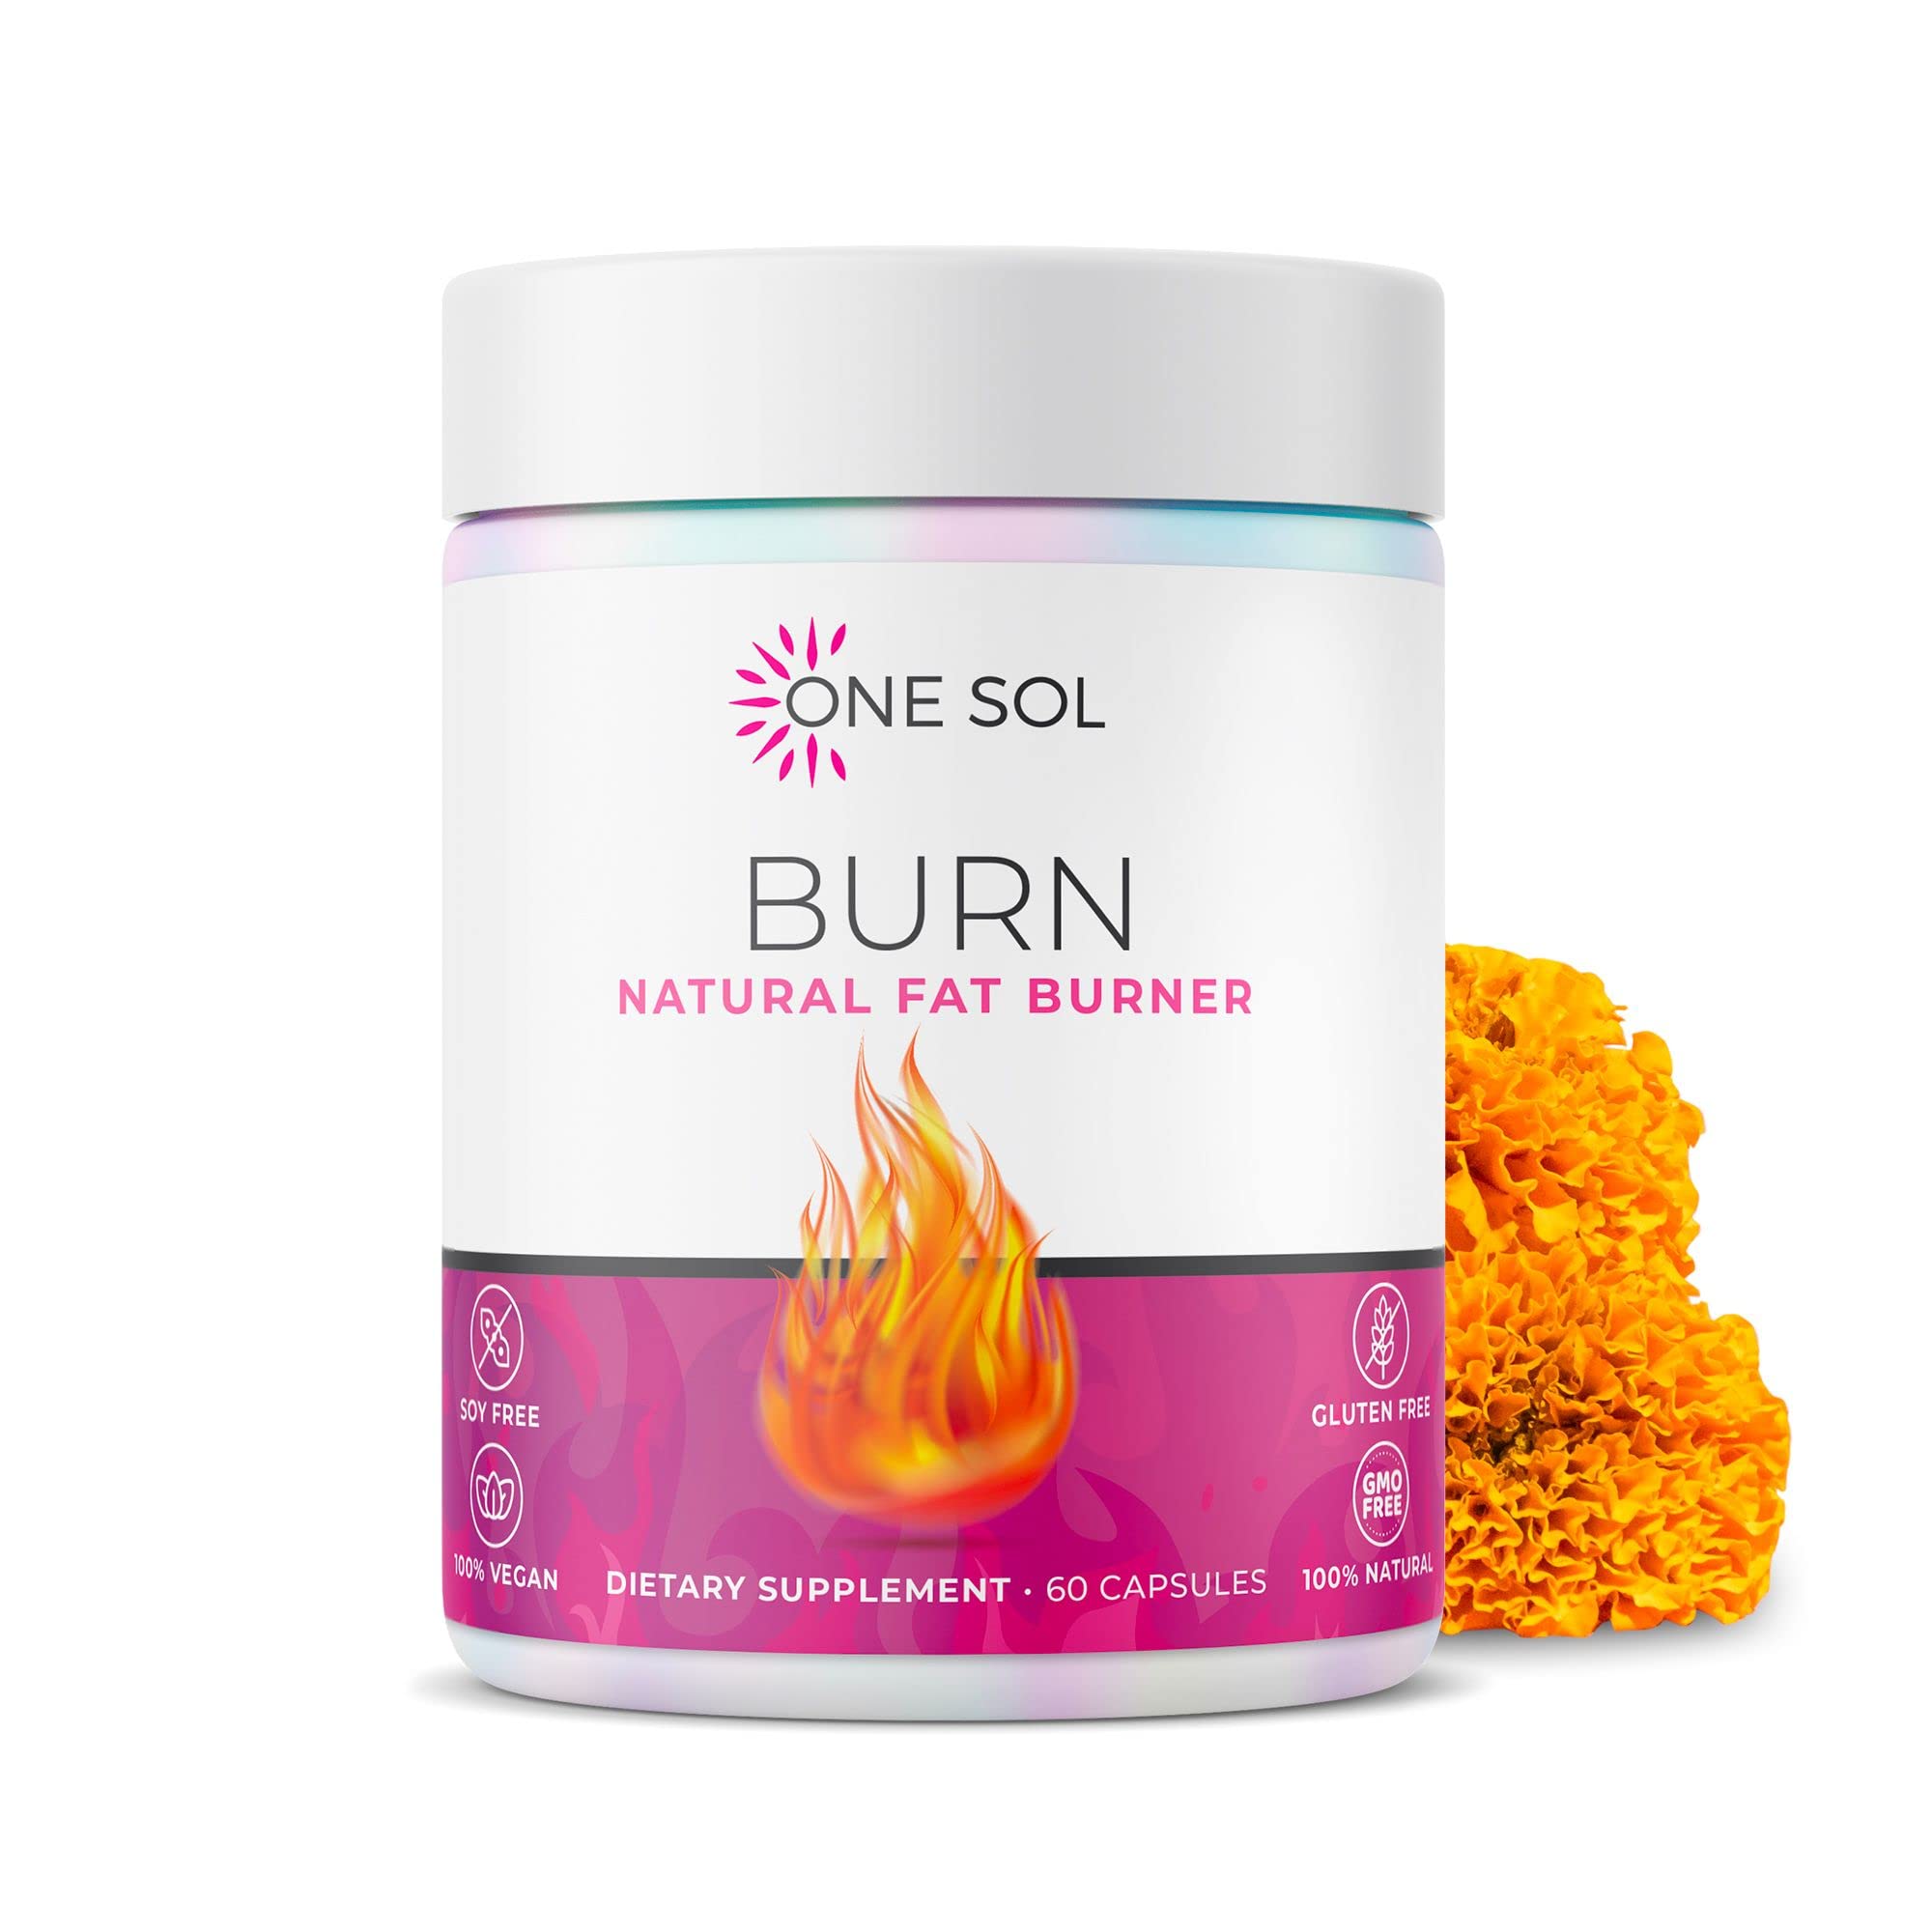 One Sol Fat Burner for Women Natural Metabolism Booster Burn More